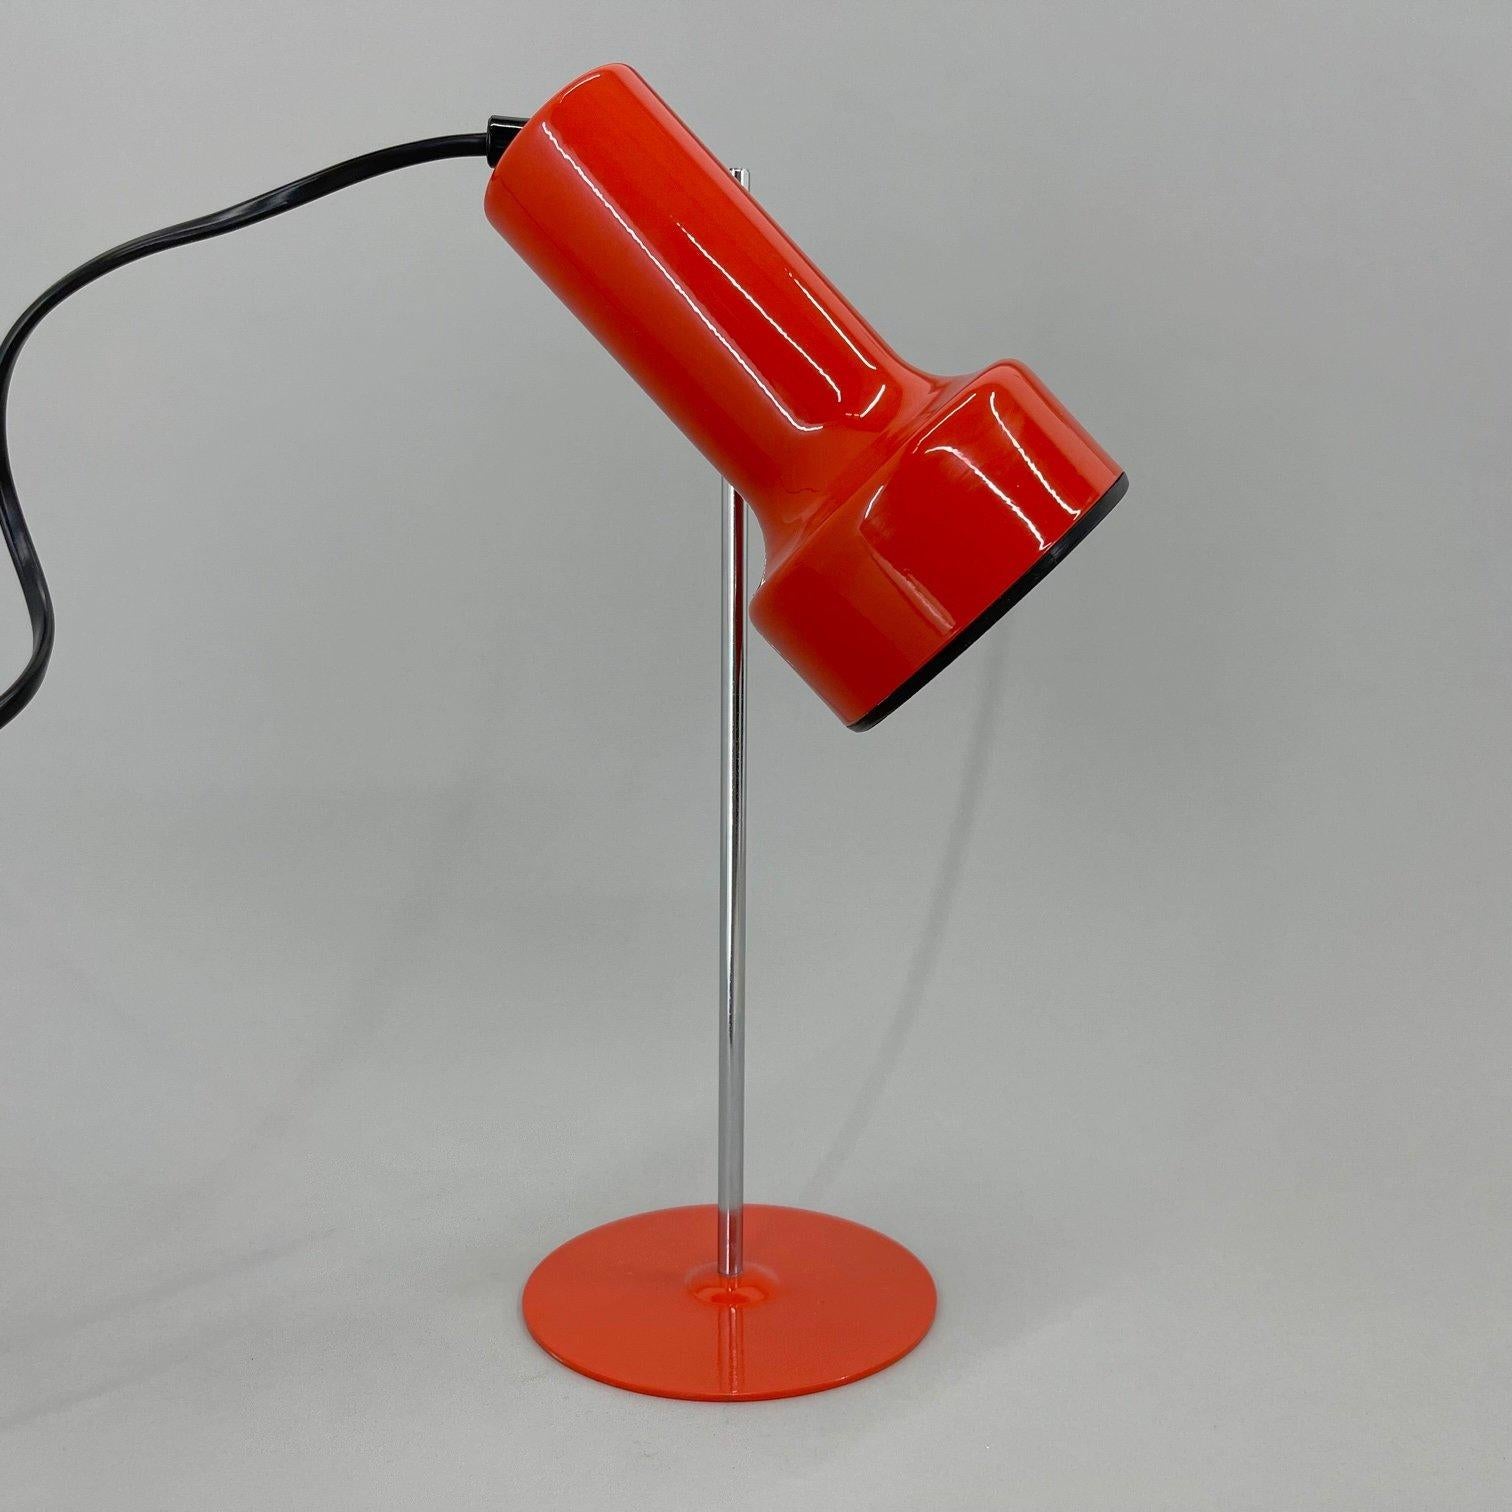 Vintage-Tischlampe aus den 1970er Jahren, hergestellt in der Schweiz. Die Höhe und die Position des Schirms können leicht eingestellt werden. Glühbirne: 1 x E25-E27.